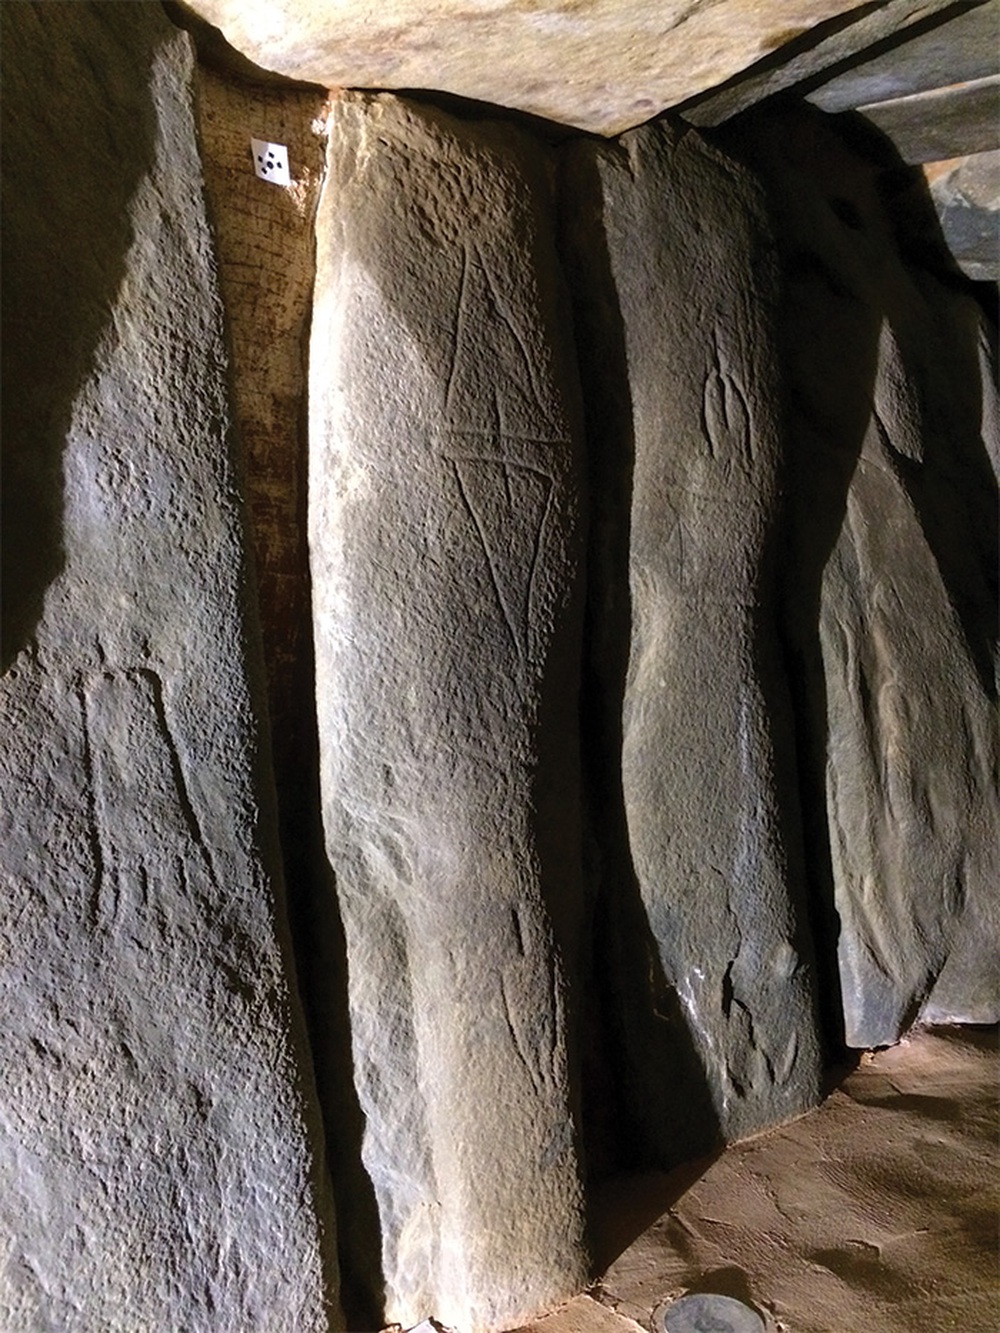 Bí ẩn mộ đá 5.000 năm tuổi ví như Stonehenge trong lòng đất ở Tây Ban Nha - Ảnh 5.